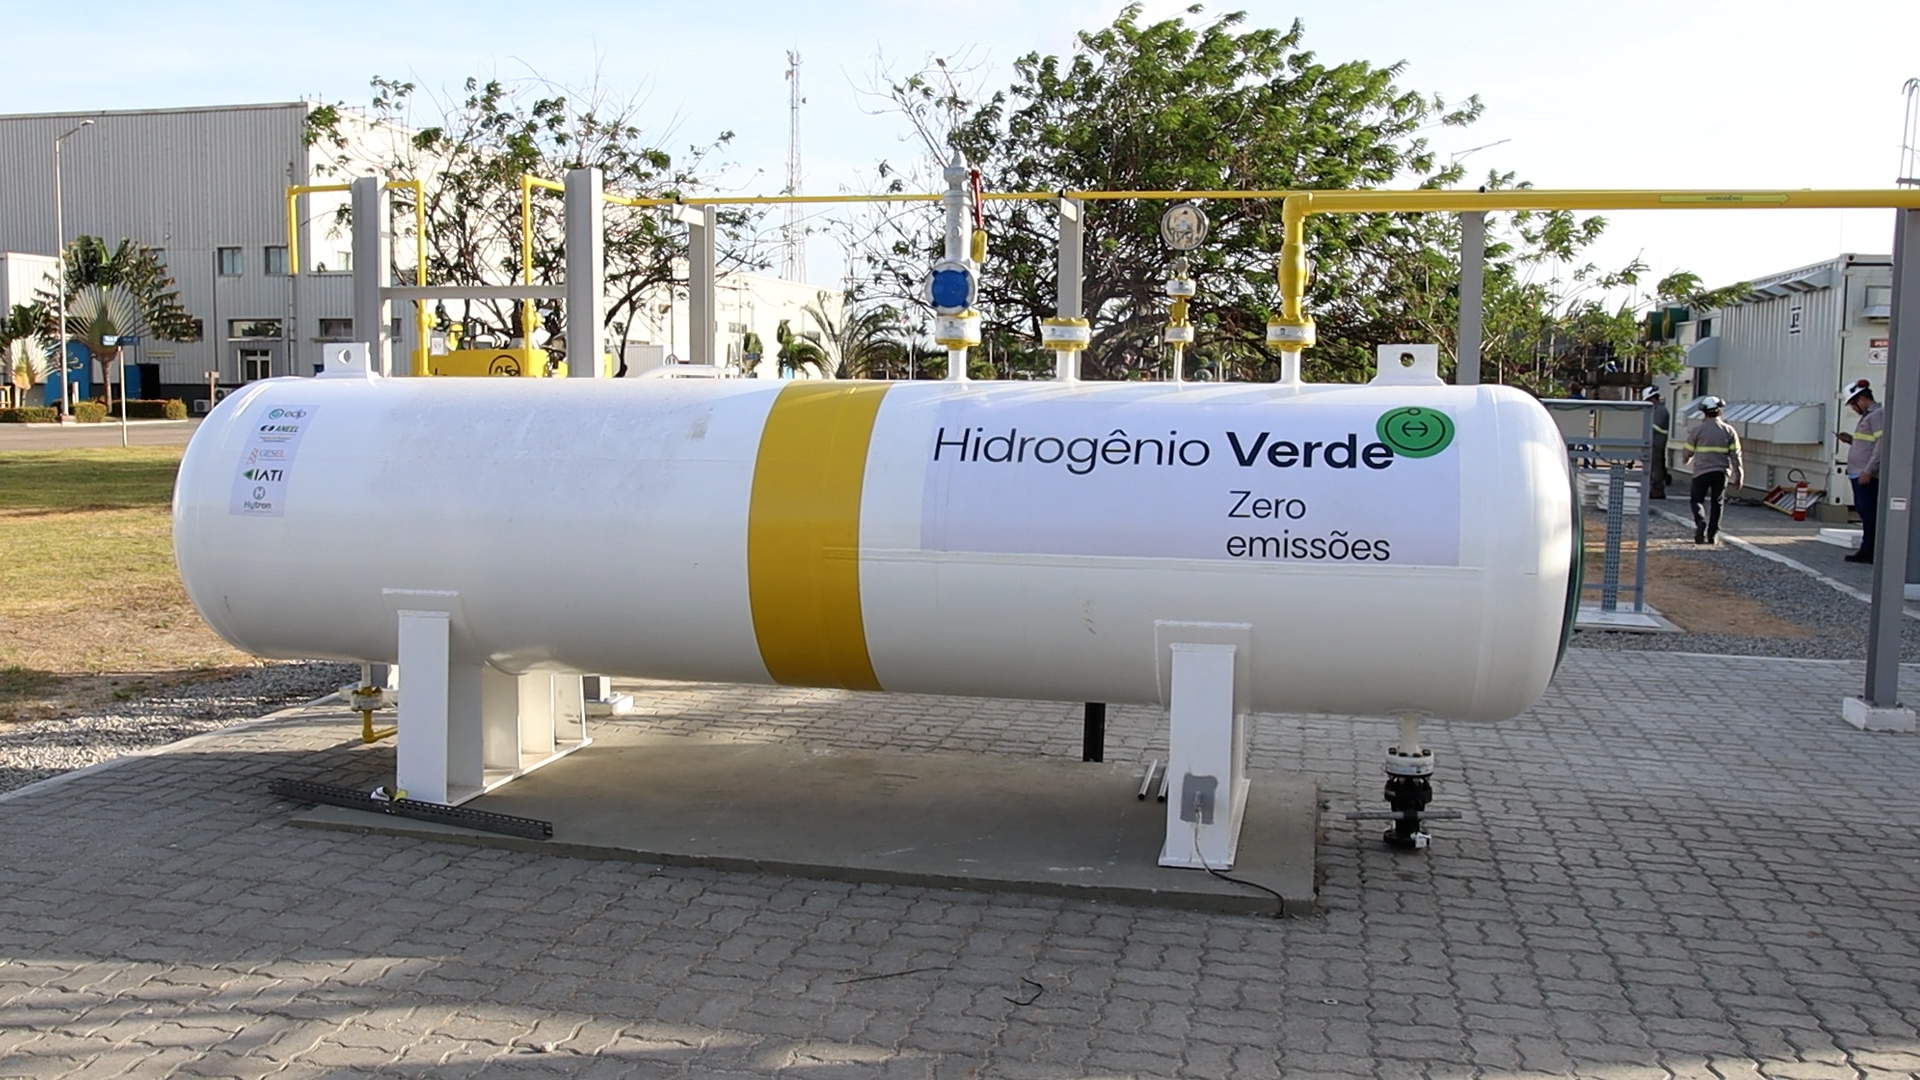 Política pública para hidrogênio deve incentivar demanda e reindustrialização, defende ABH2. Na imagem: Tanque de armazenamento de hidrogênio em projeto de P&D Pecém H2V, da EDP, no Ceará (Foto: Divulgação EDP)